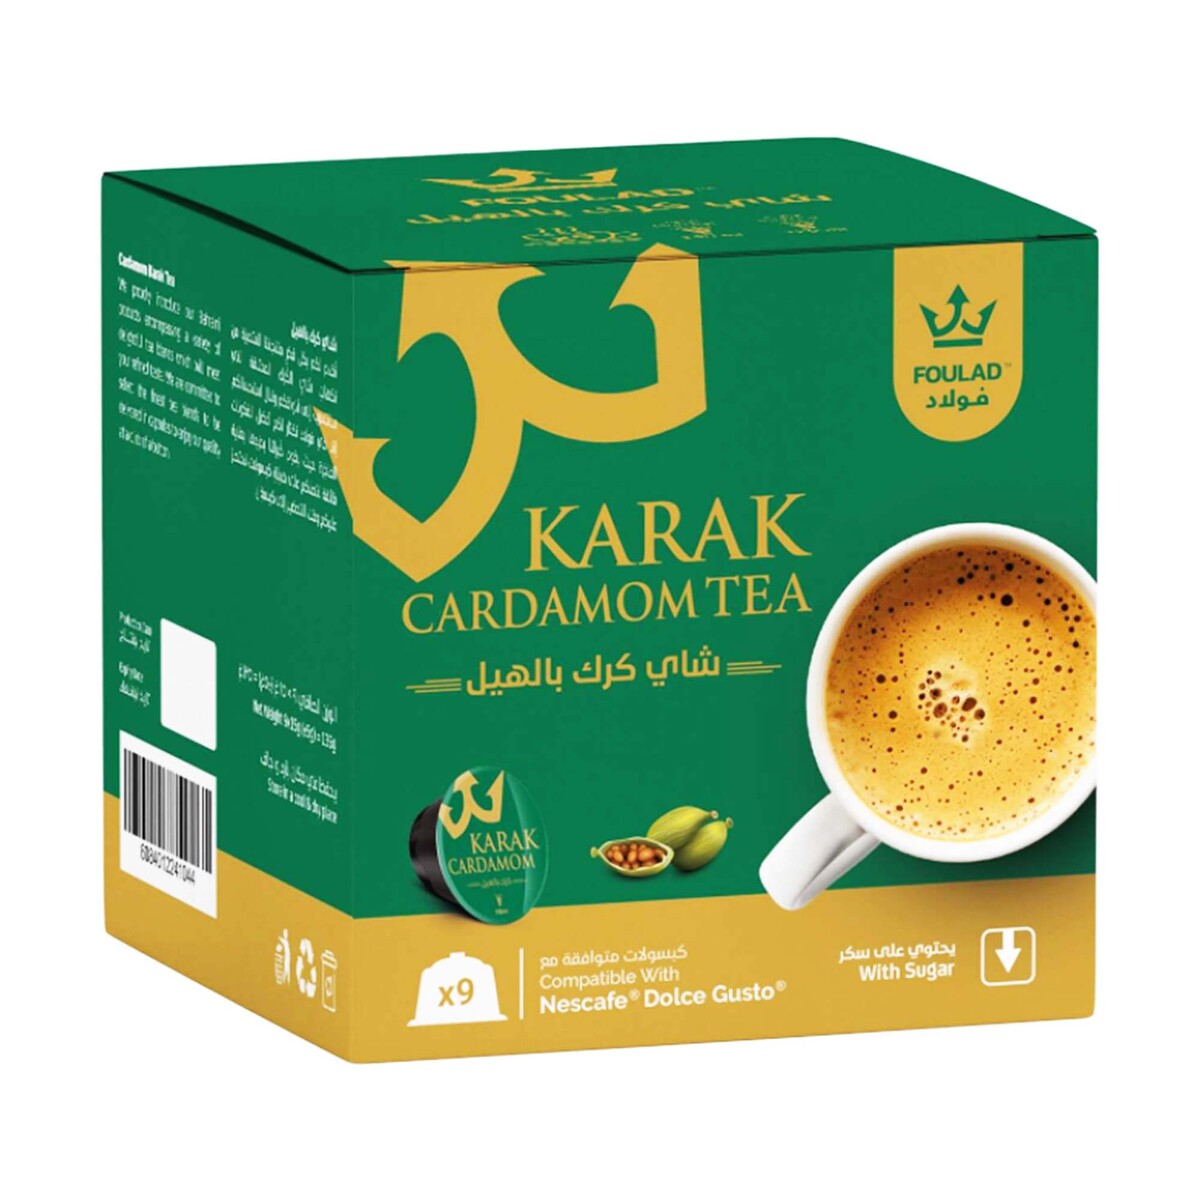 Foulad Karak Cardamom Tea Capsules with Sugar 9pcs